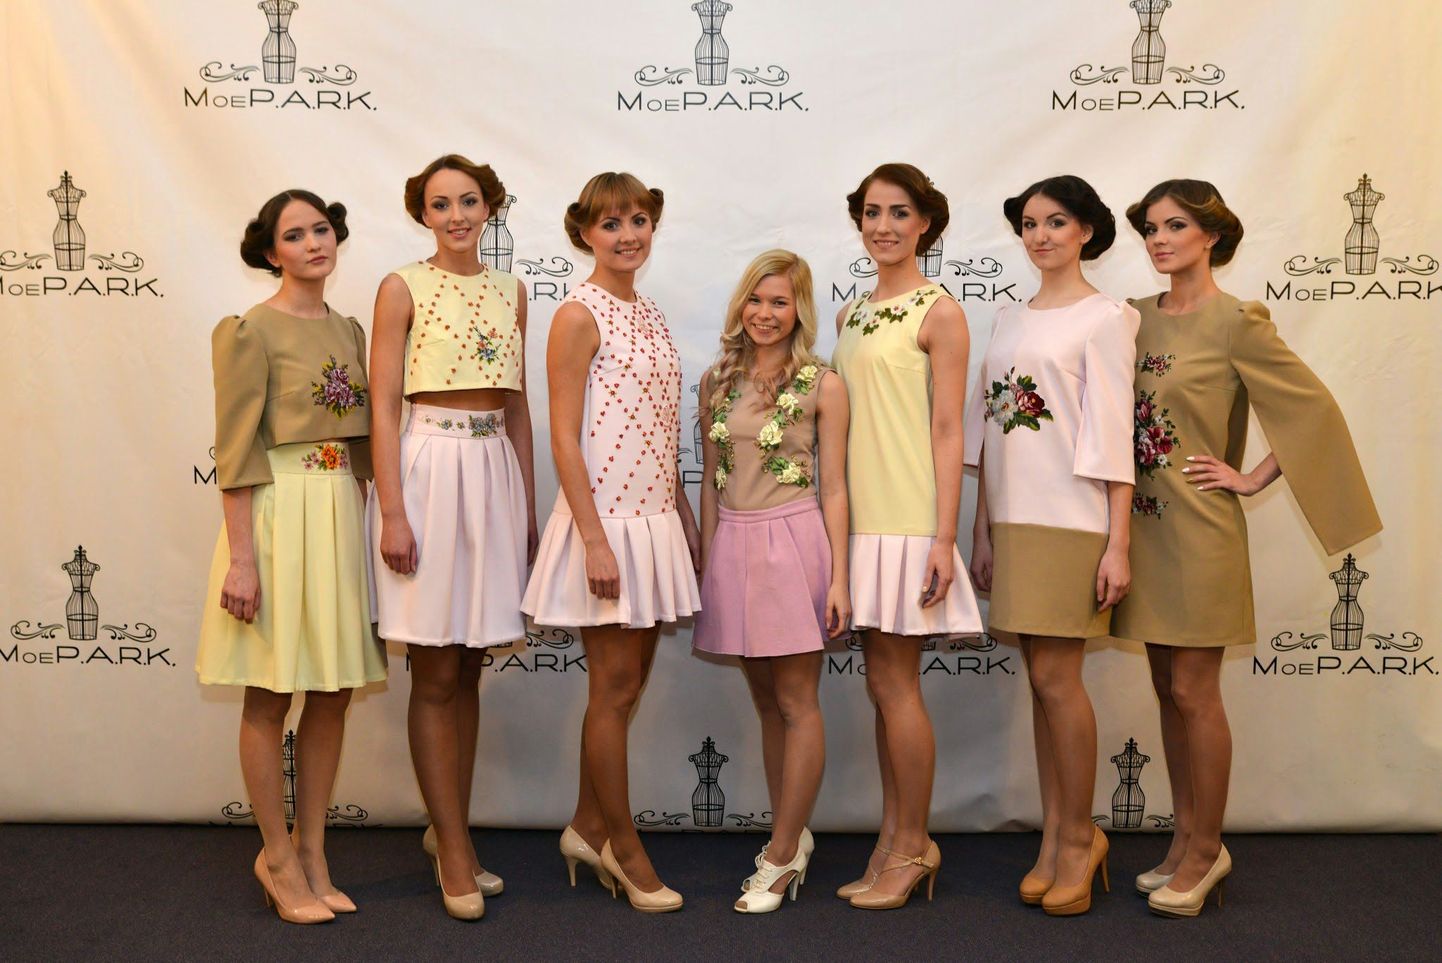 Paides noorte moekonkurss MoeP.A.R.K. 2015, mis tõi publiku ette 24 omanäolist rõivakollektsiooni. Lavalaudadel käis üle 150 modelli.